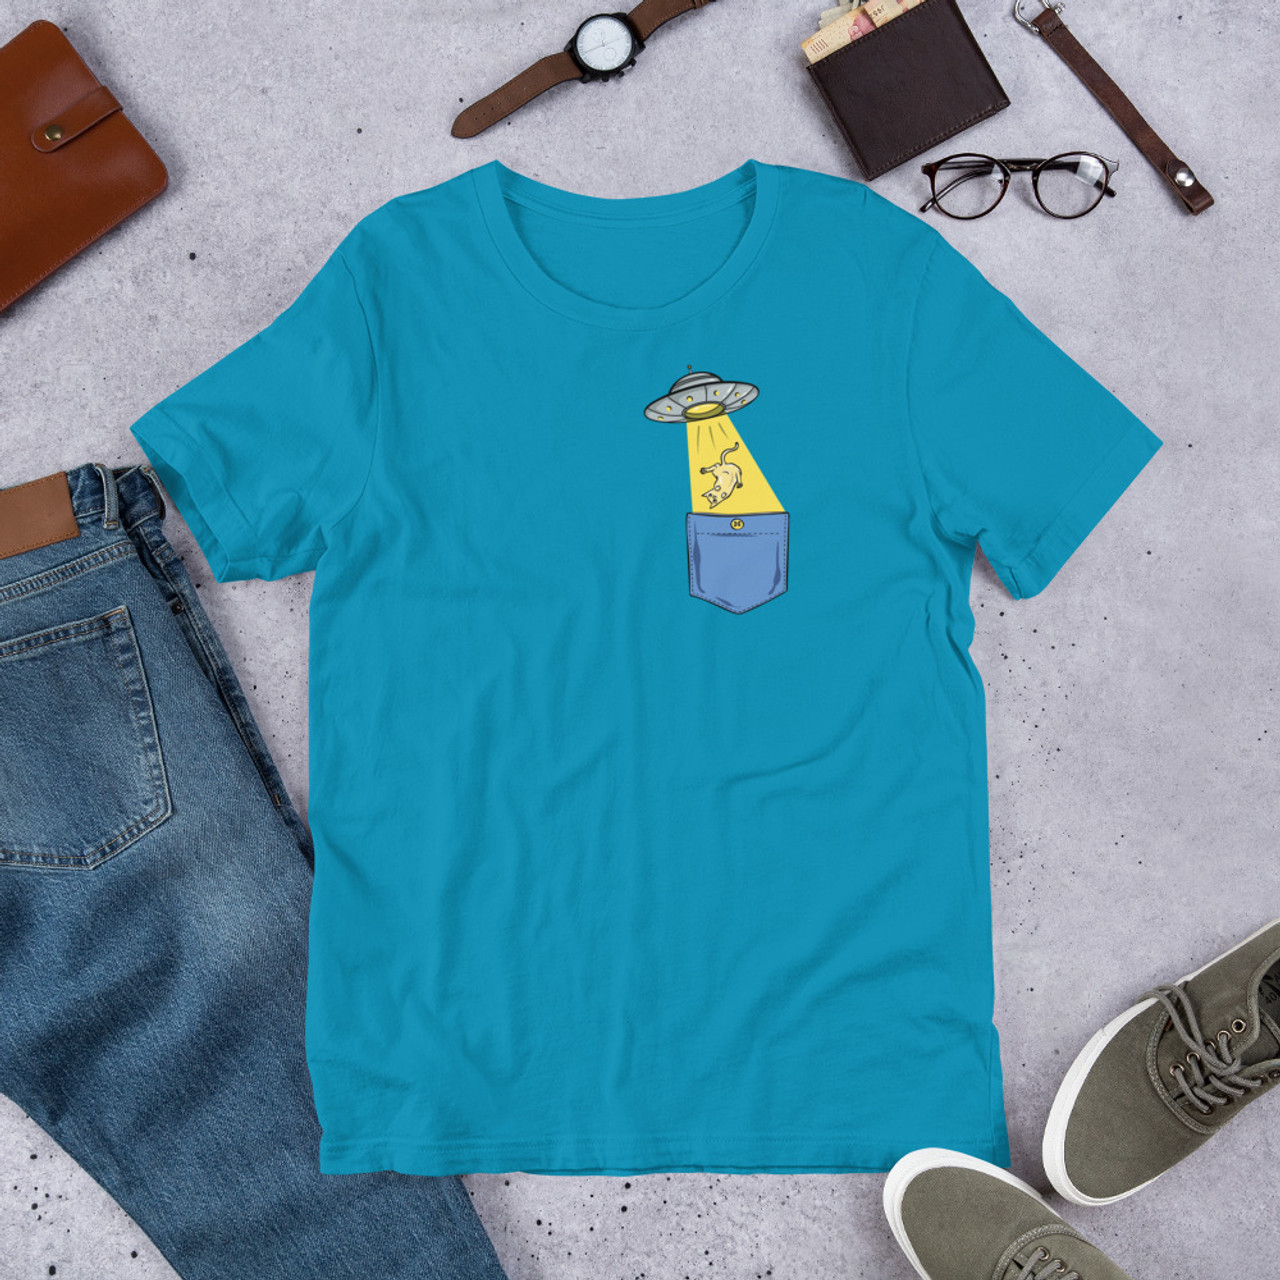 Aqua T-Shirt - Bella + Canvas 3001 UFO Pocket Cat